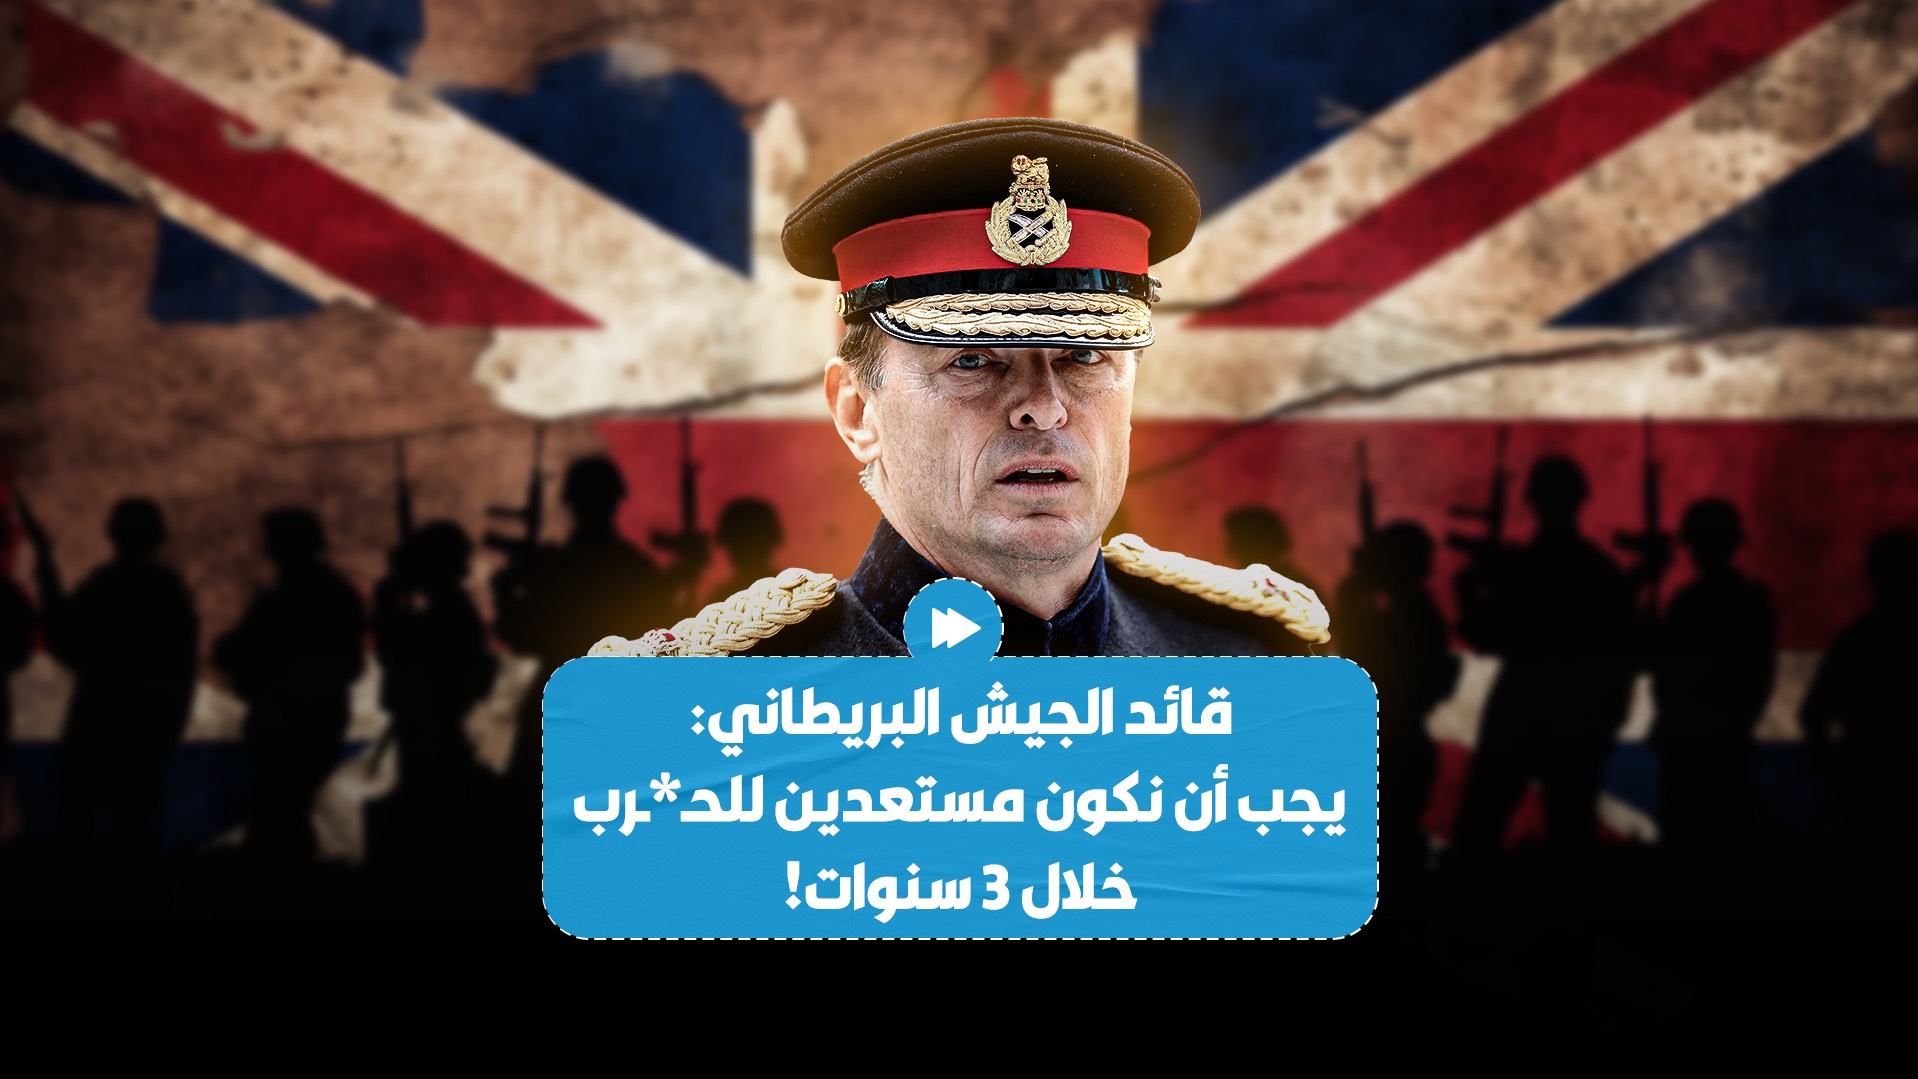 قائد الجيش البريطاني رولي ووكر يؤكد أن المملكة المتحدة يجب أن تستعدّ للحـ*ـرب خلال 3 سنوات!